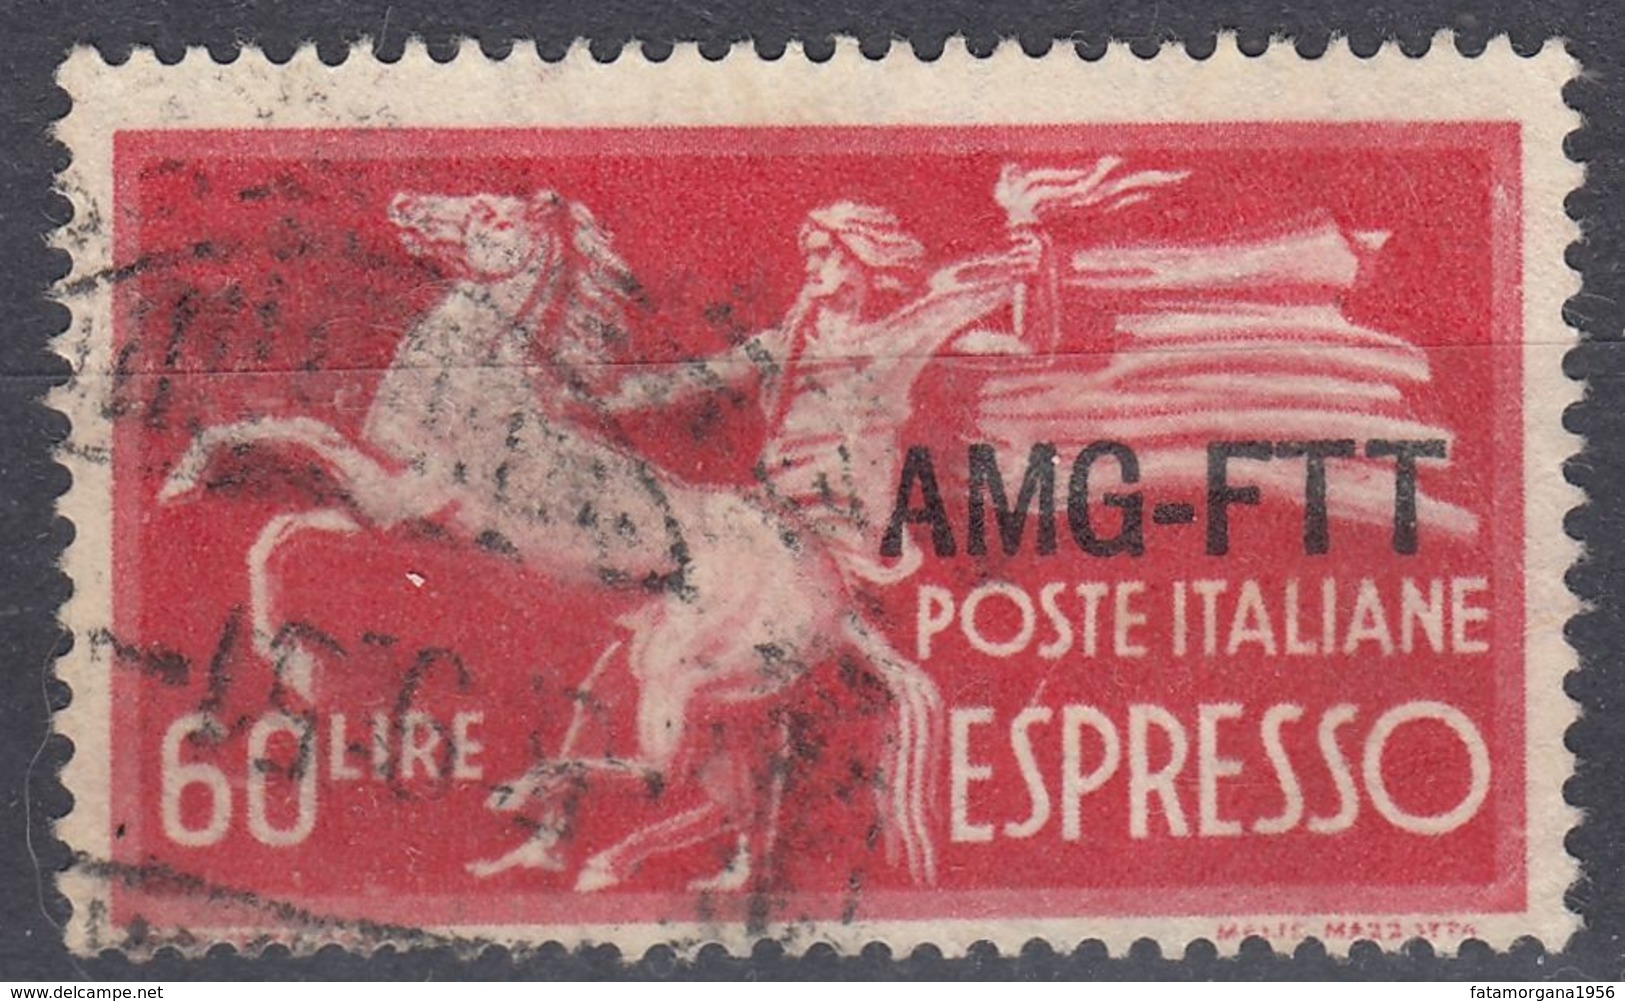 TRIESTE, OCCUPAZIONE ANGLOAMERICANA - 1950 - Yvert 12, Usato, Espresso. - Posta Espresso